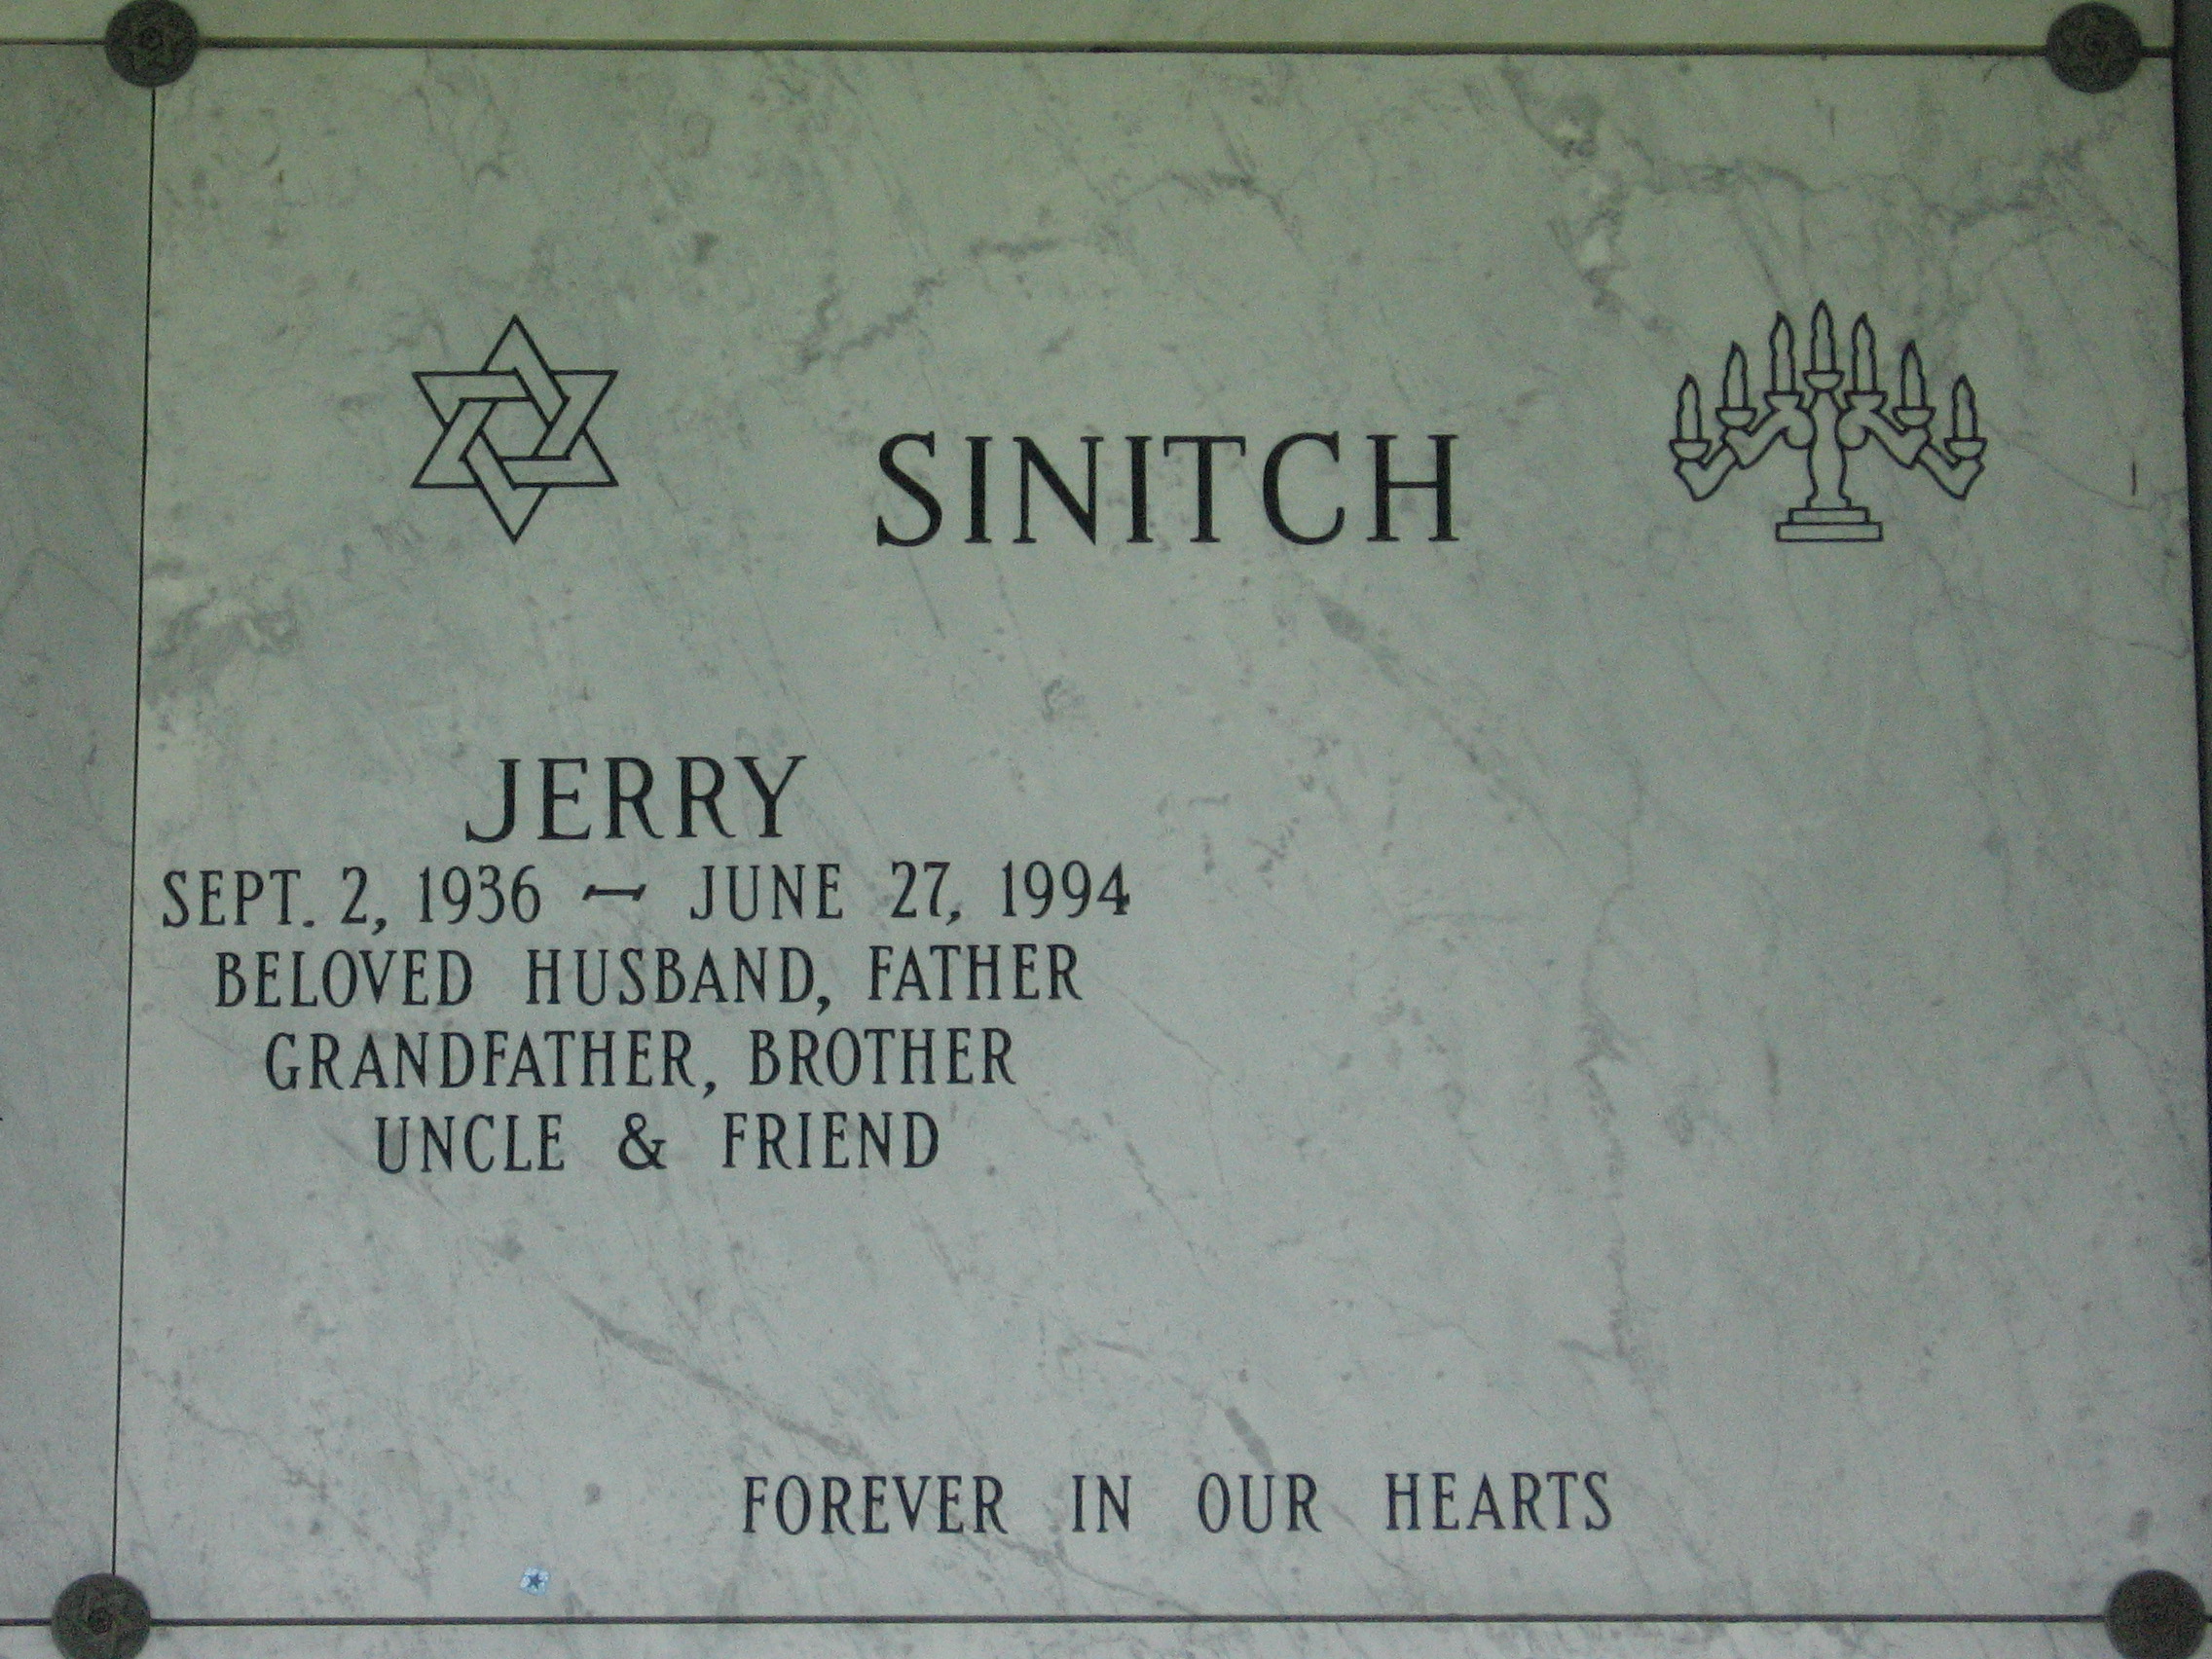 Jerry Sinitch